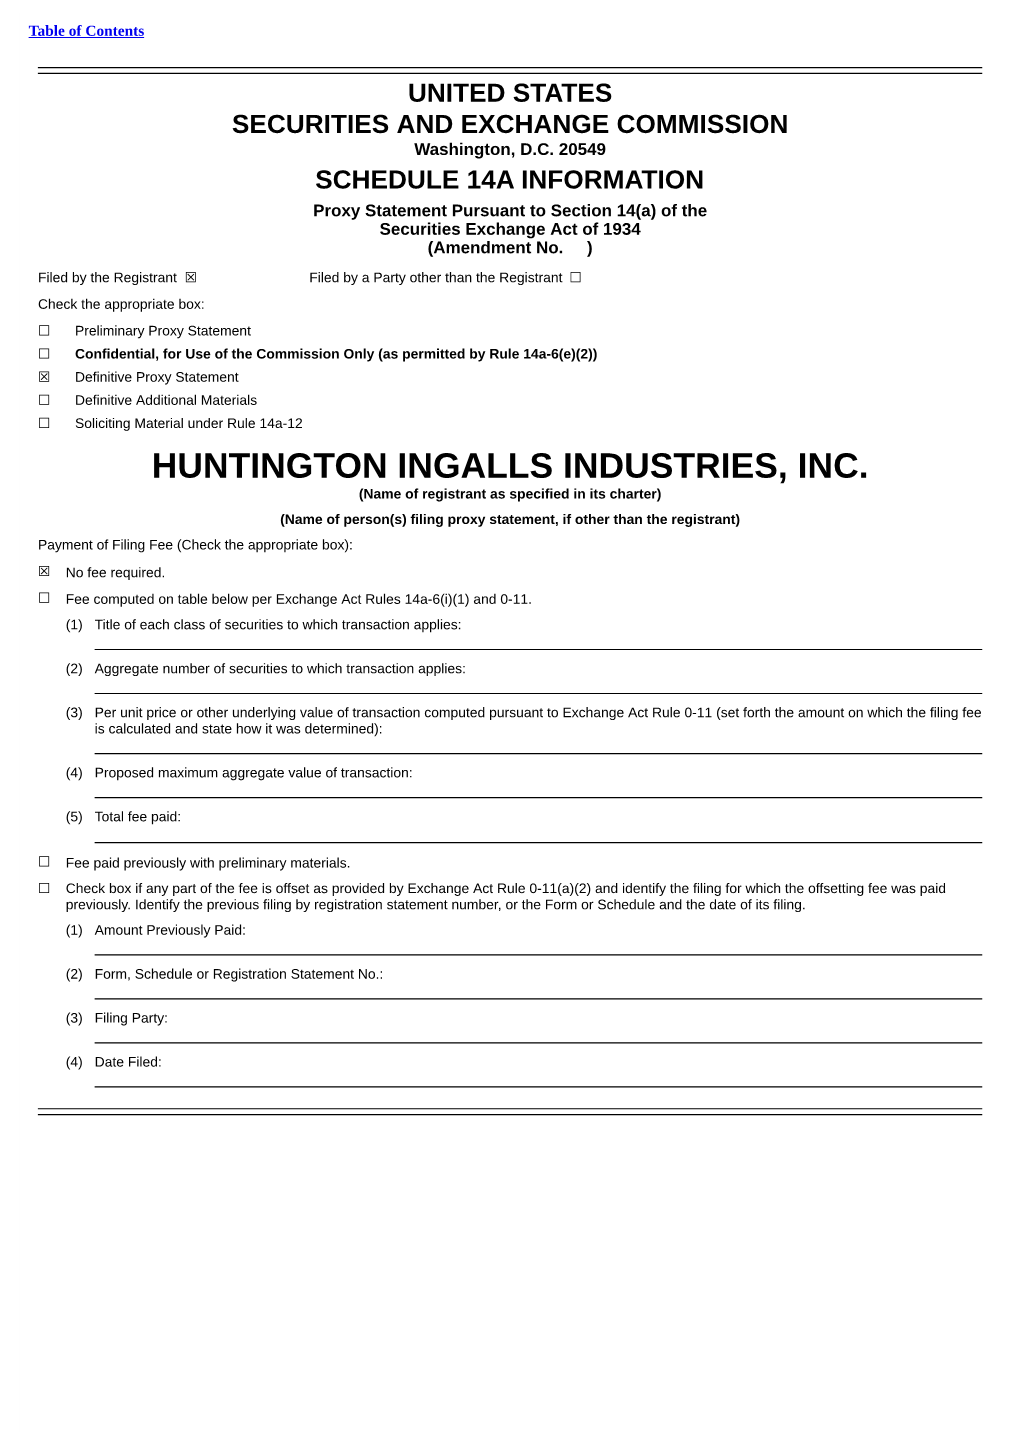 Huntington Ingalls Industries, Inc